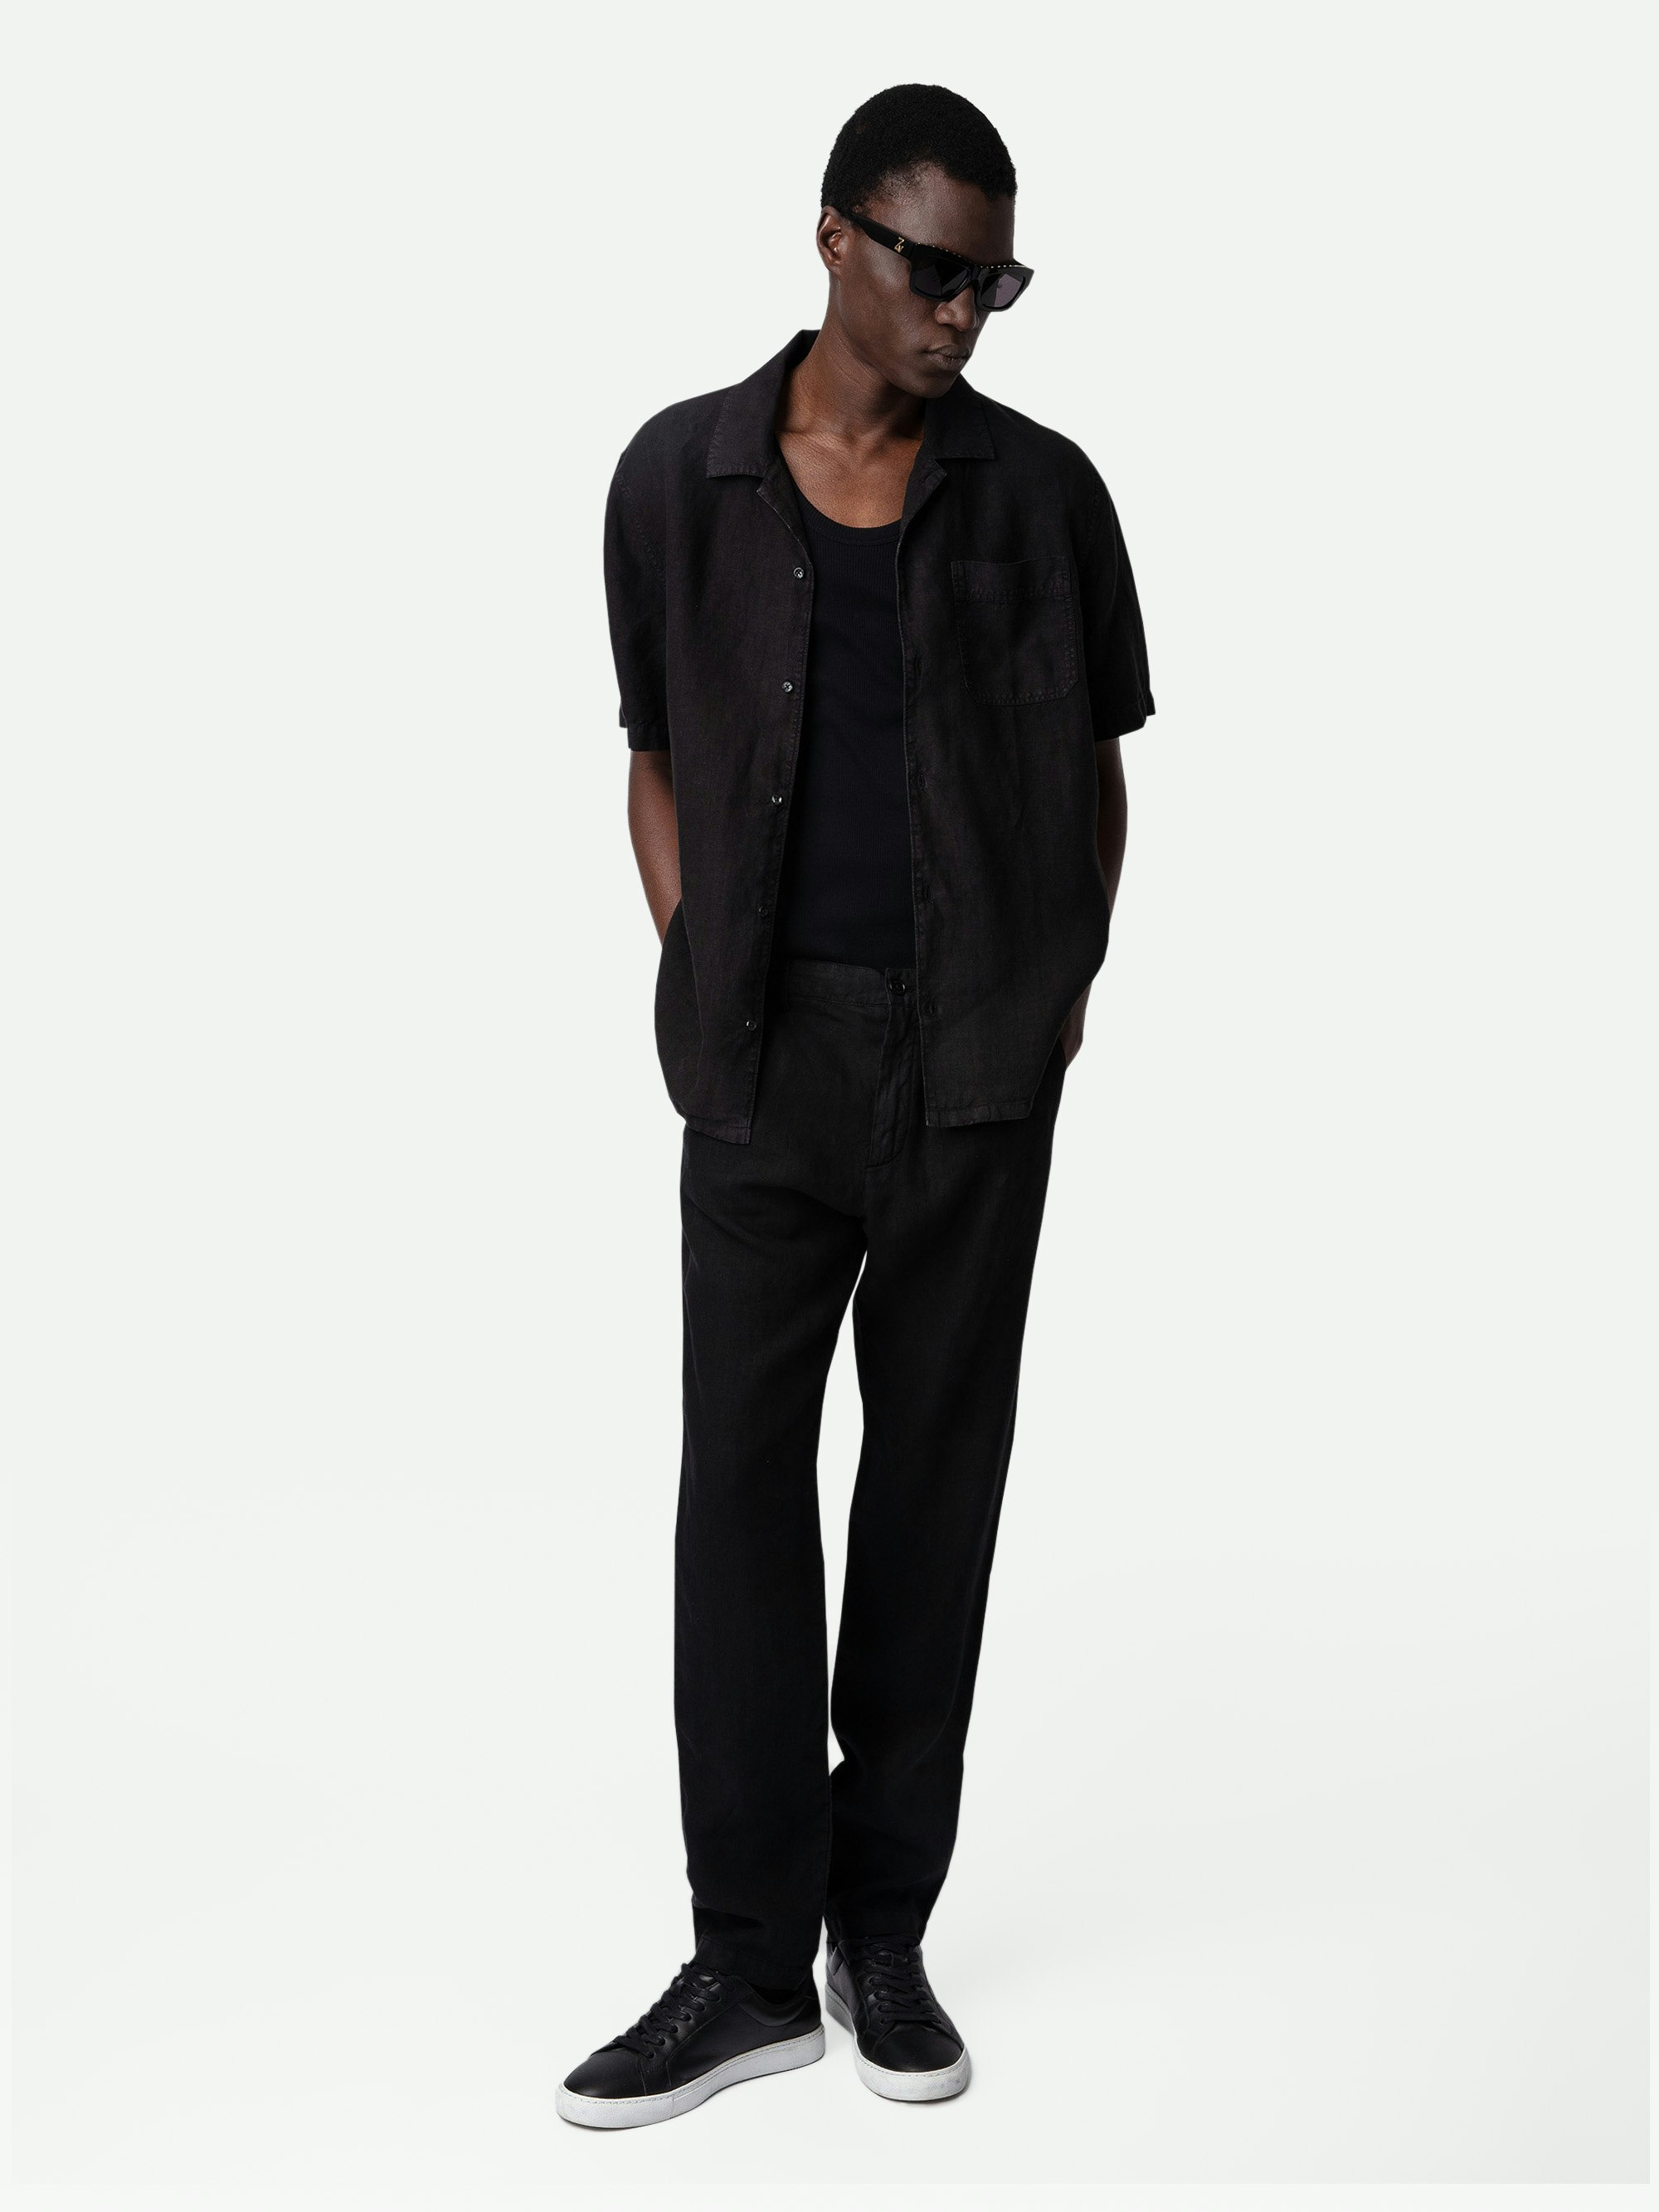 Camisa de Lino Sloan - Camisa negra de lino con botones y mangas cortas.